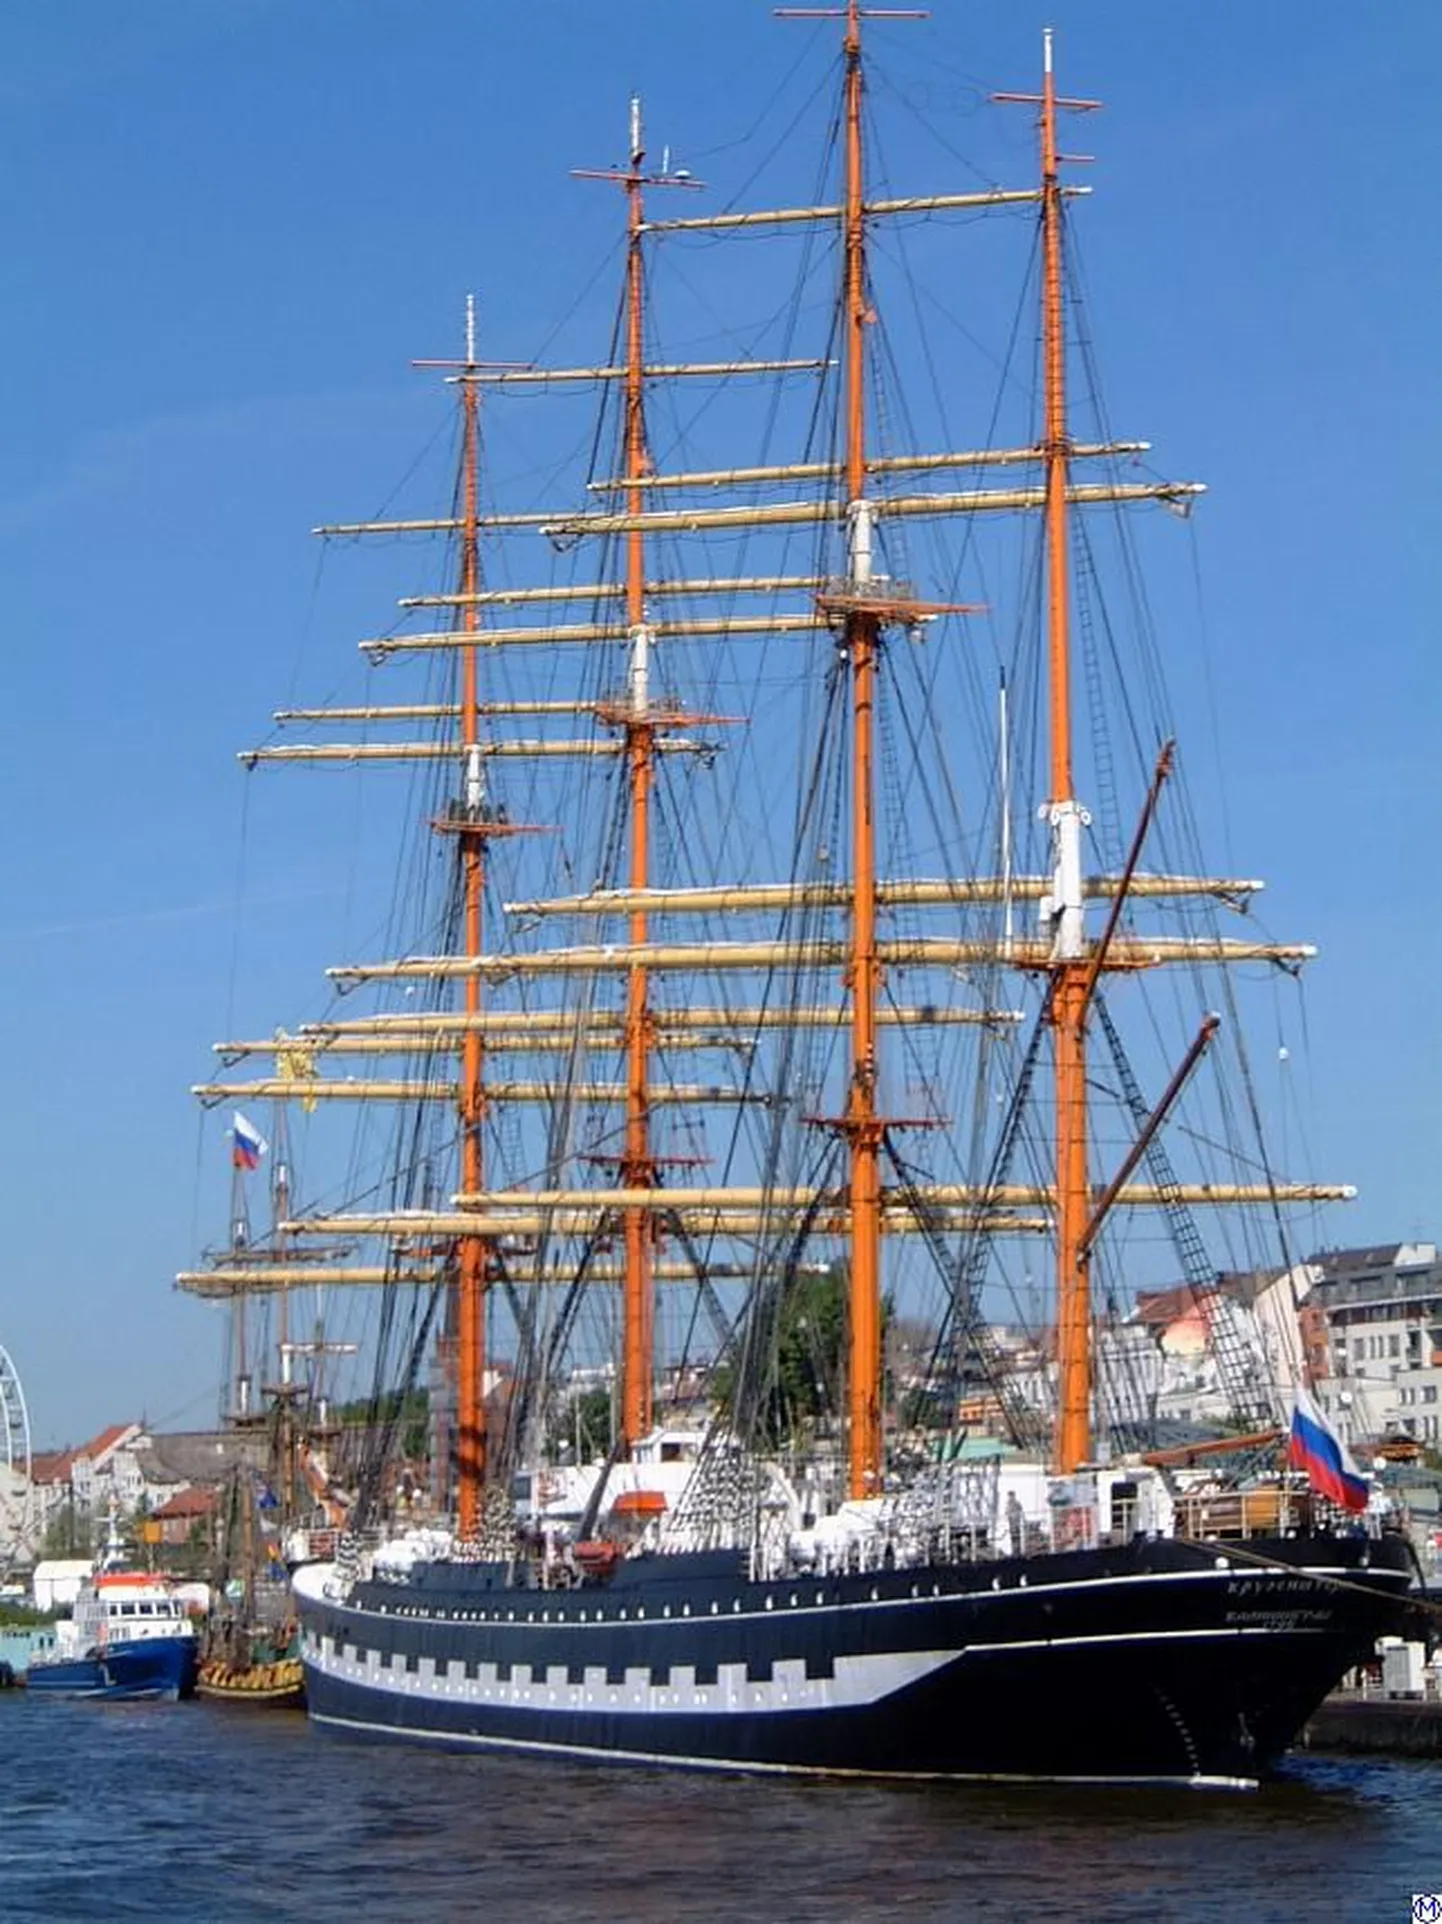 Neljamastiline Krusenstern Hamburgi sadamas.